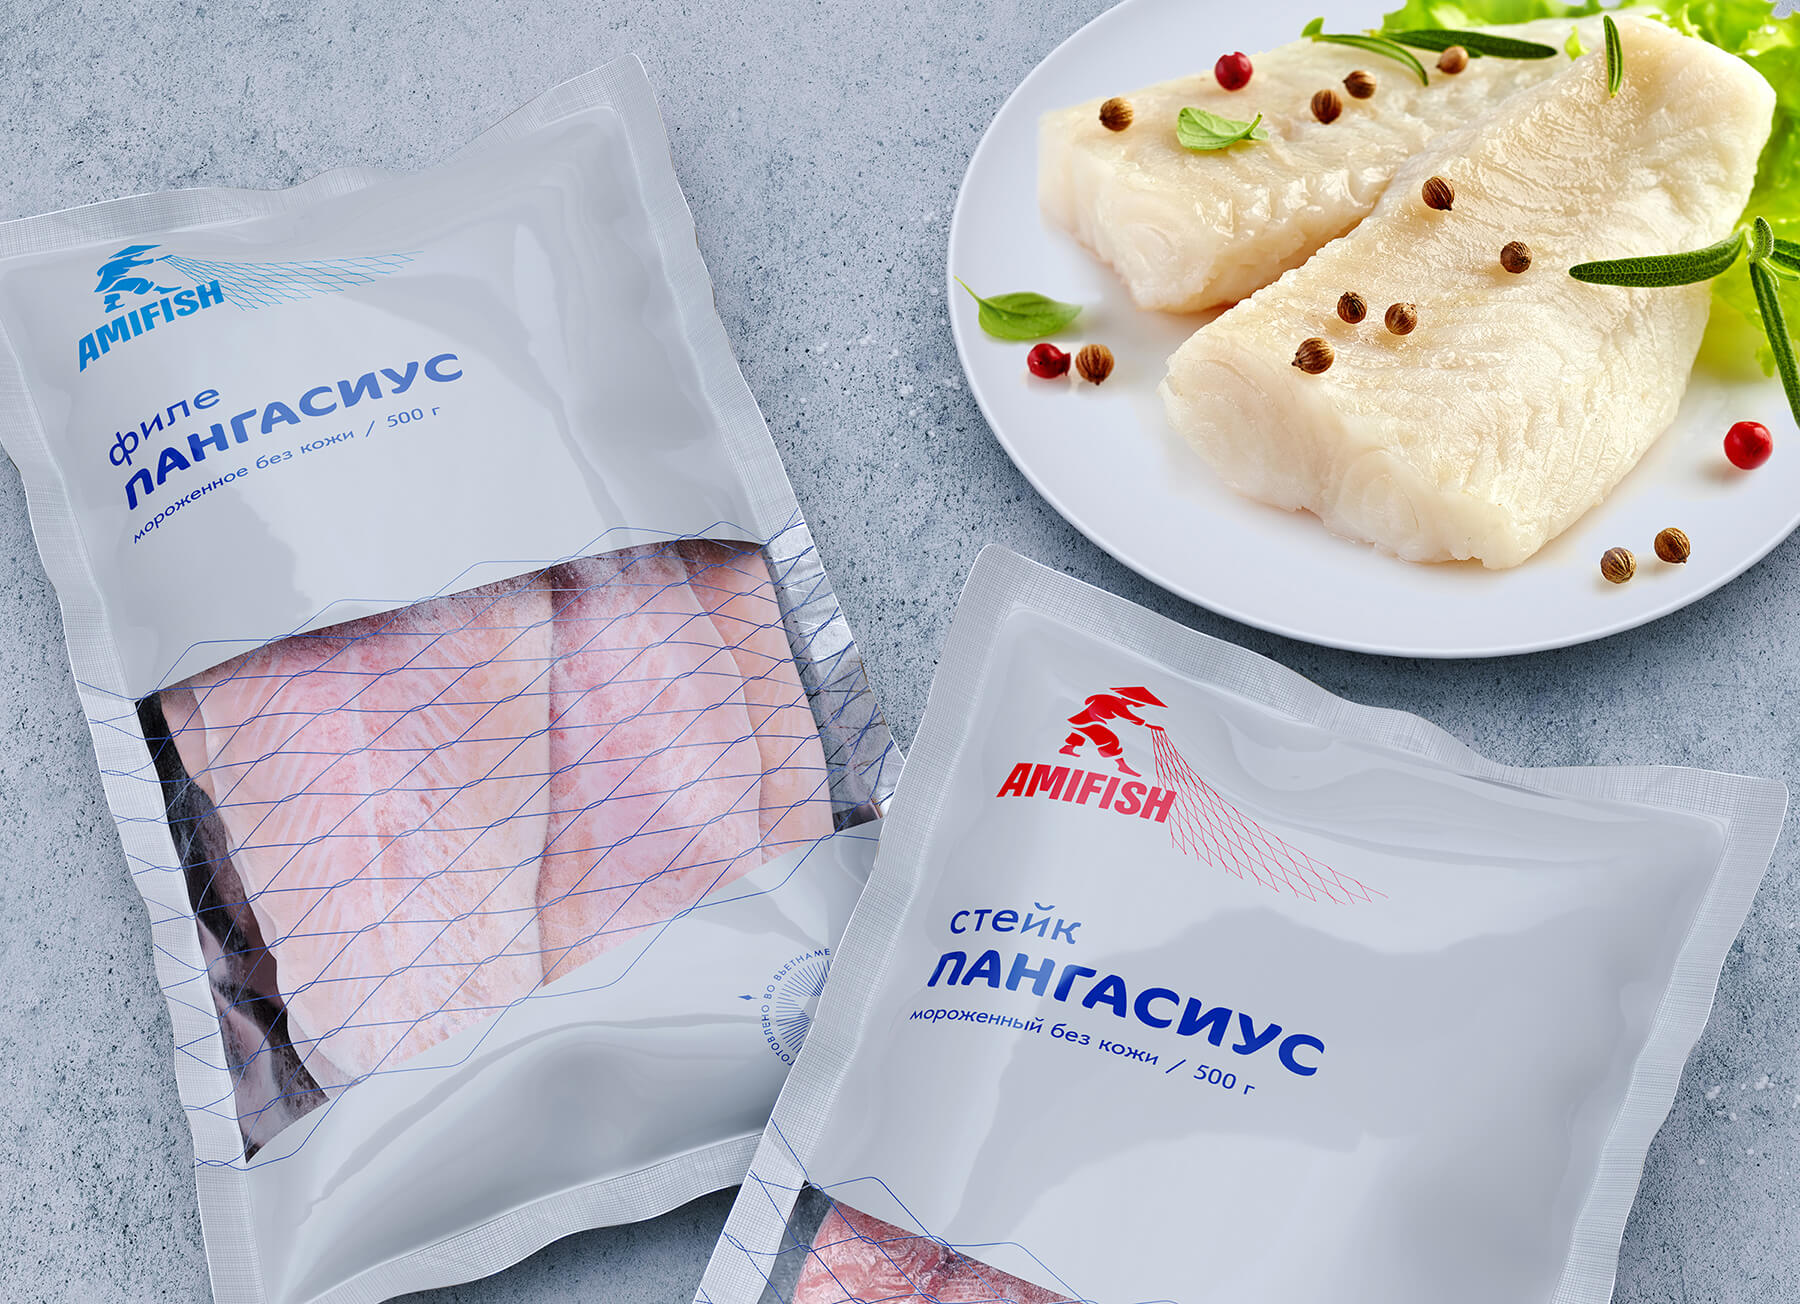 Дизайн упаковки бренда рыбной и морской продукции.